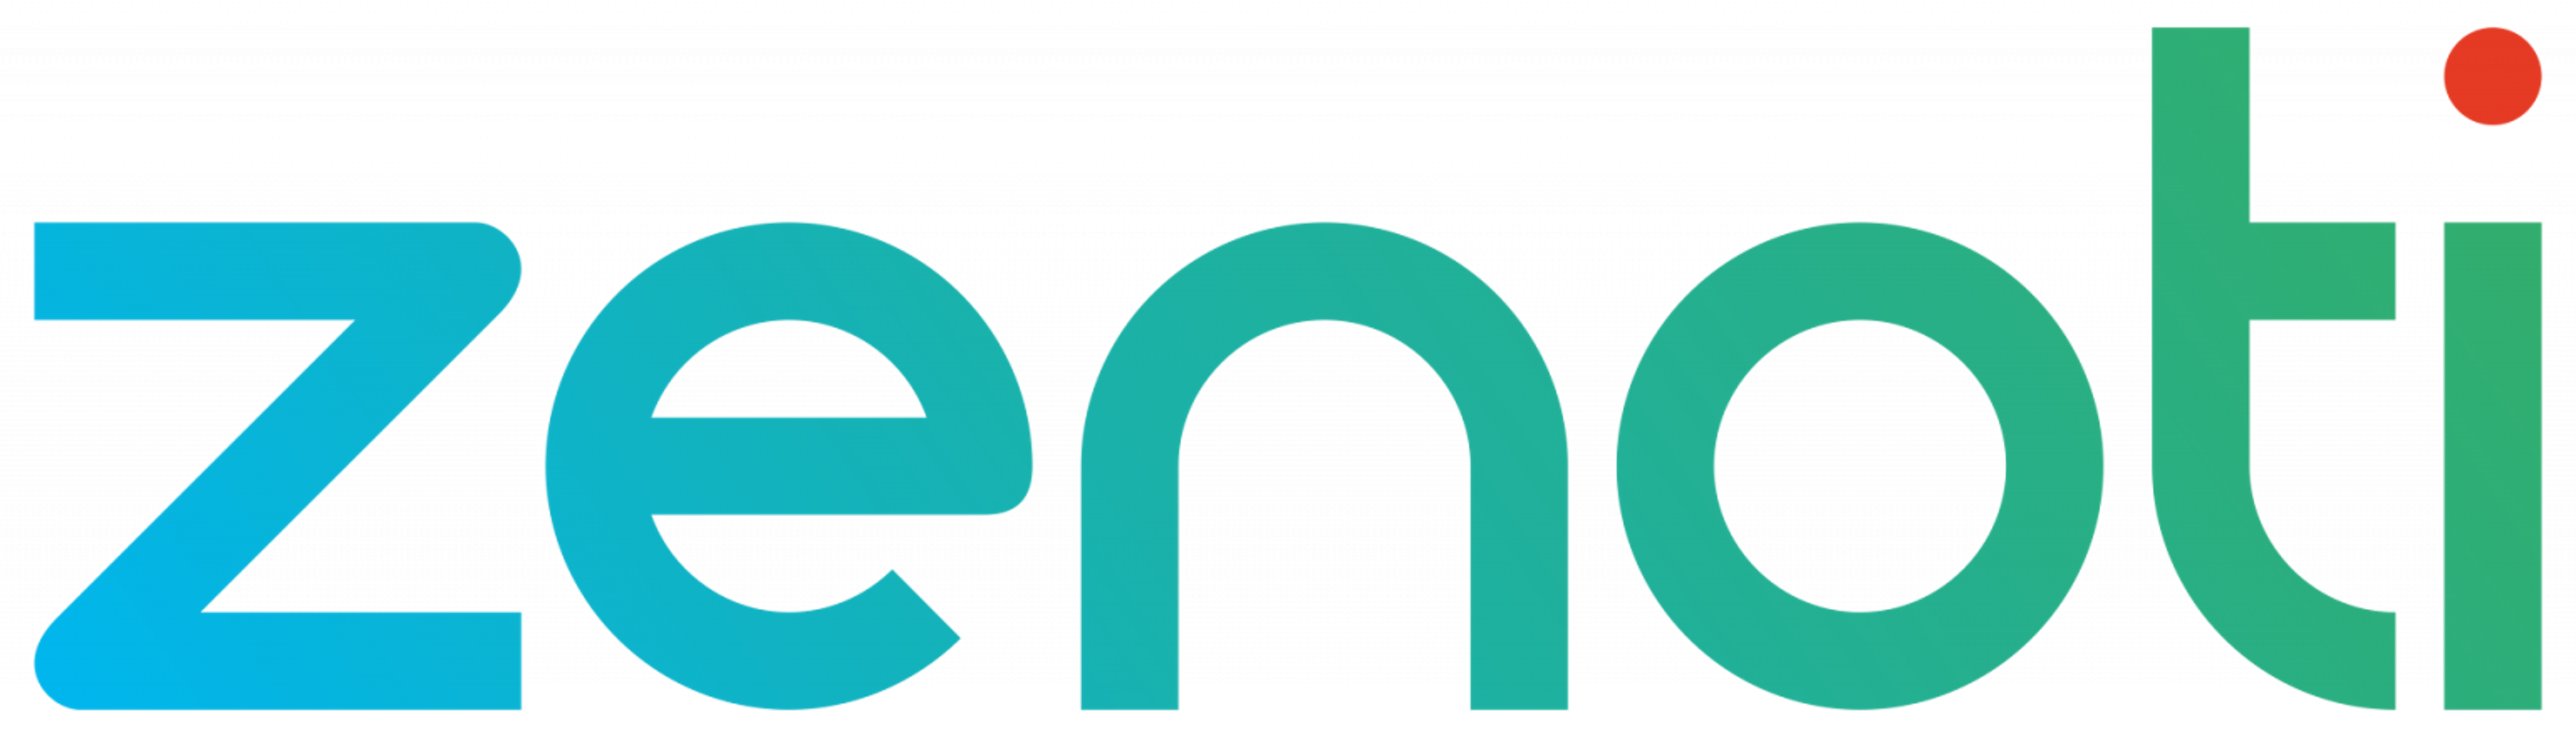 ZENOTI Logo